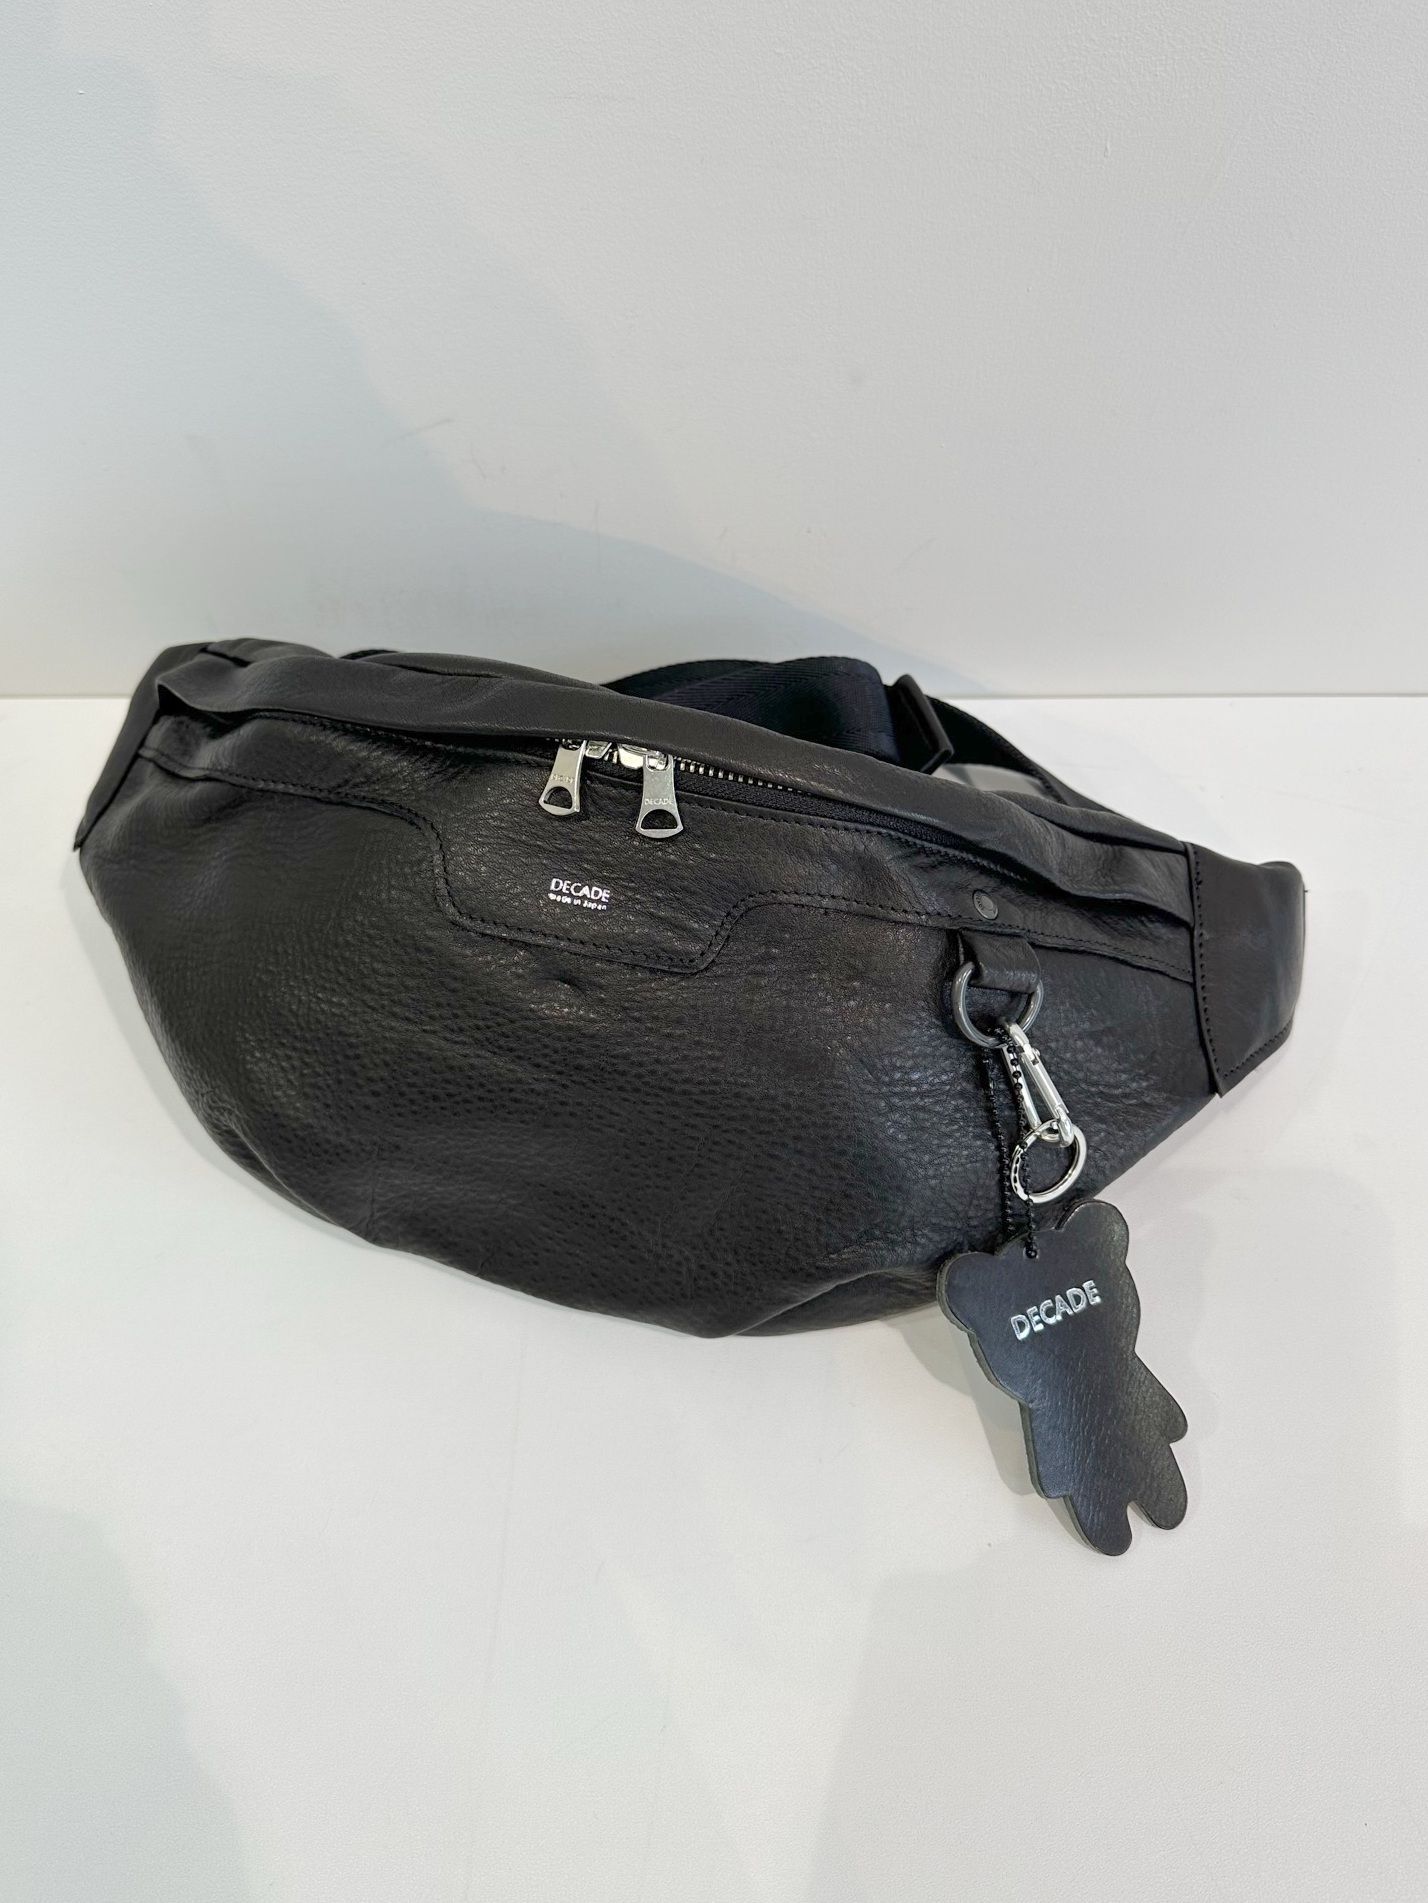 ディケード／DECADE バッグ ショルダーバッグ 鞄 メンズ 男性 男性用レザー 革 本革 ブラック 黒  DCD-00118 ボディバッグ ウォッシュ加工